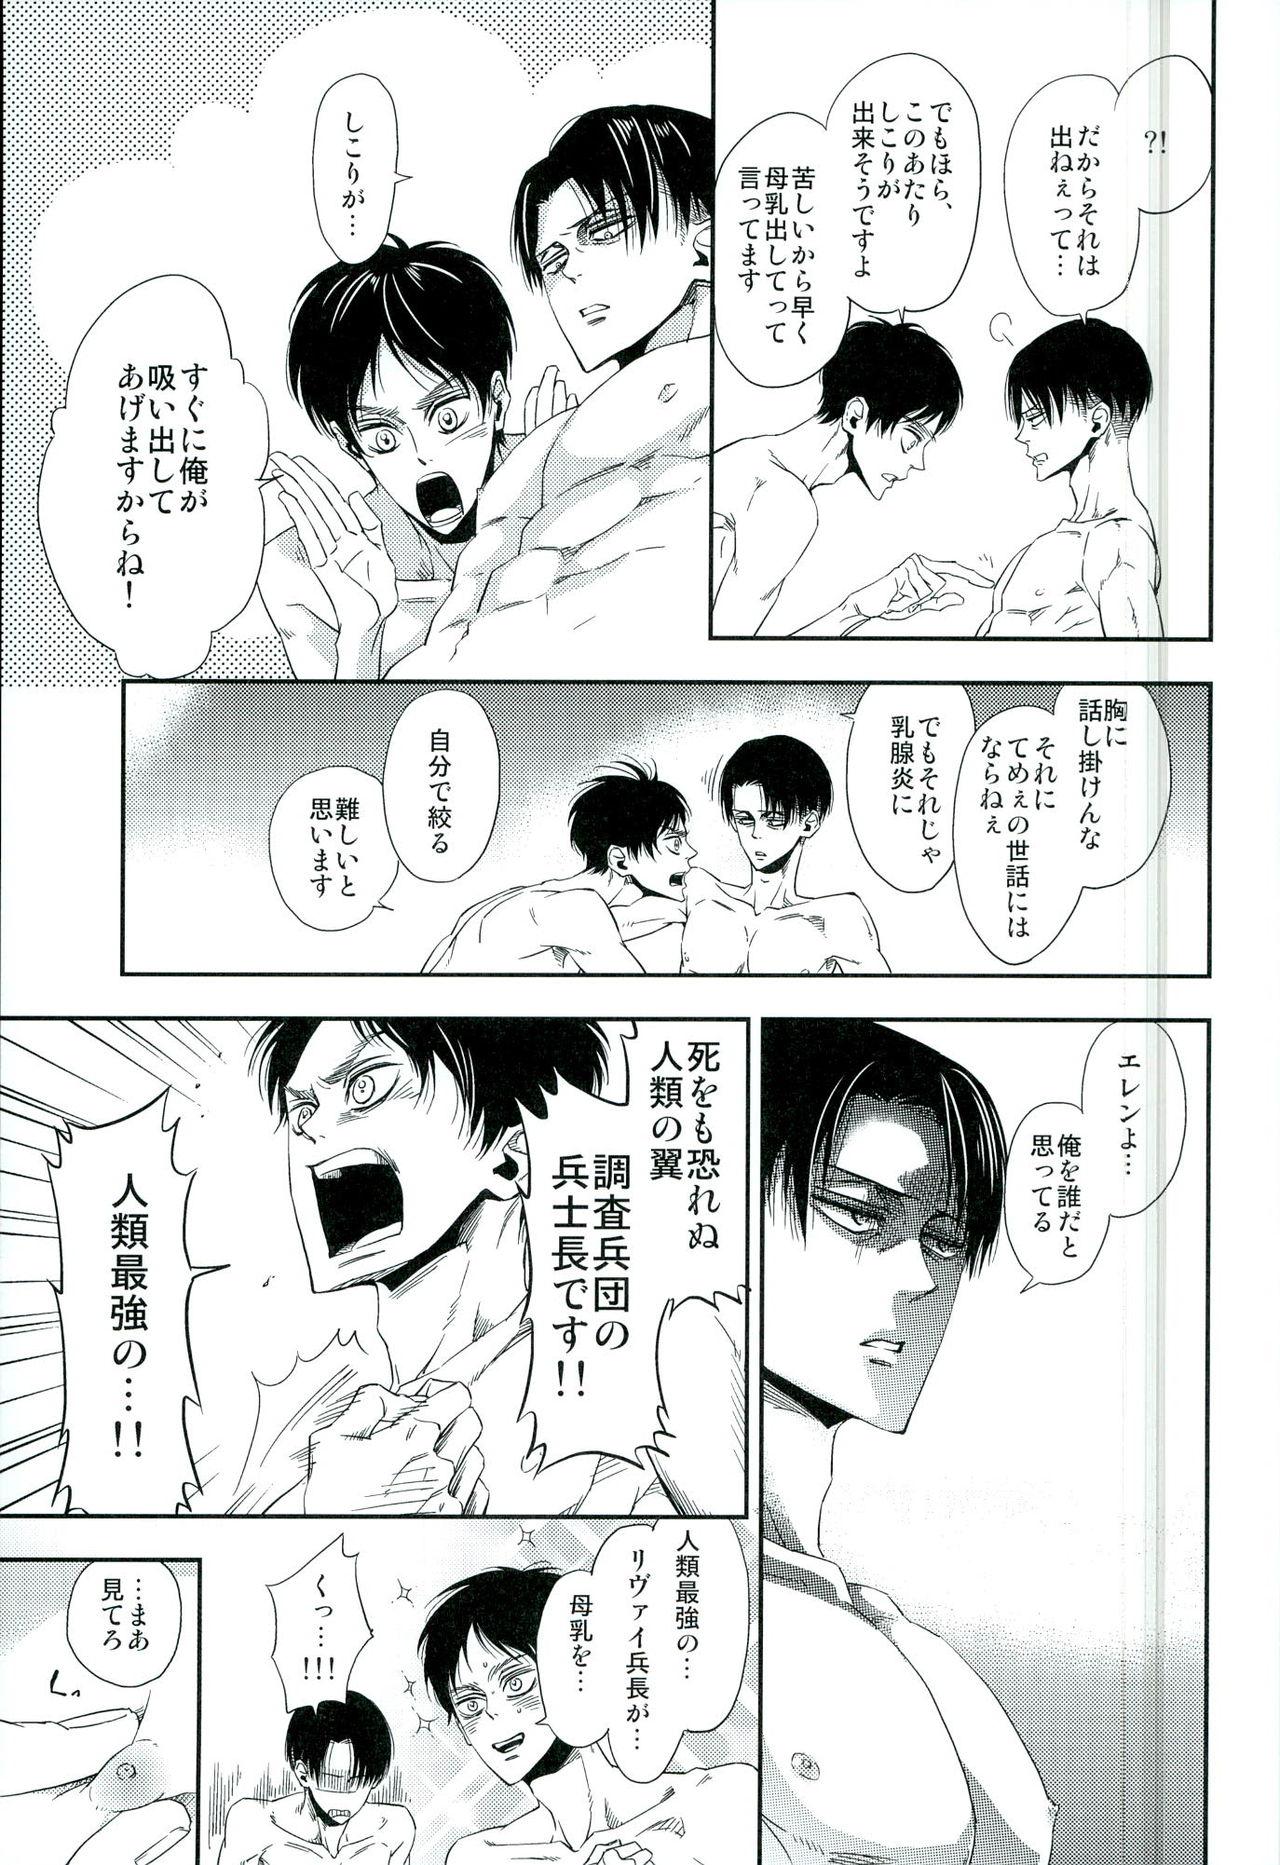 Bisex 兵長のおっぱいから母乳が出るところが見たい! - Shingeki no kyojin Asslicking - Page 8